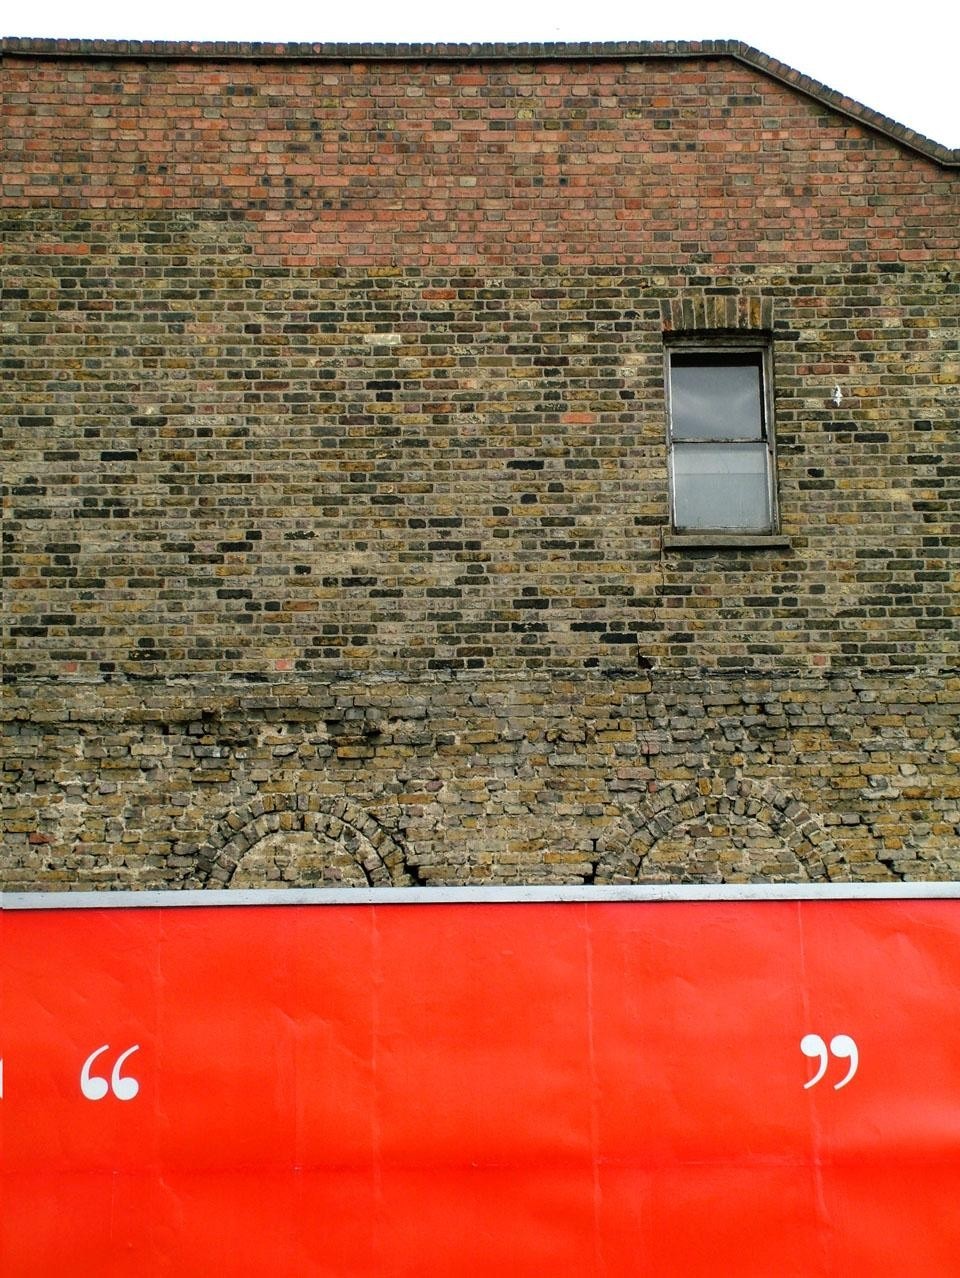 Charlie Koolhaas, True Cities: Londra